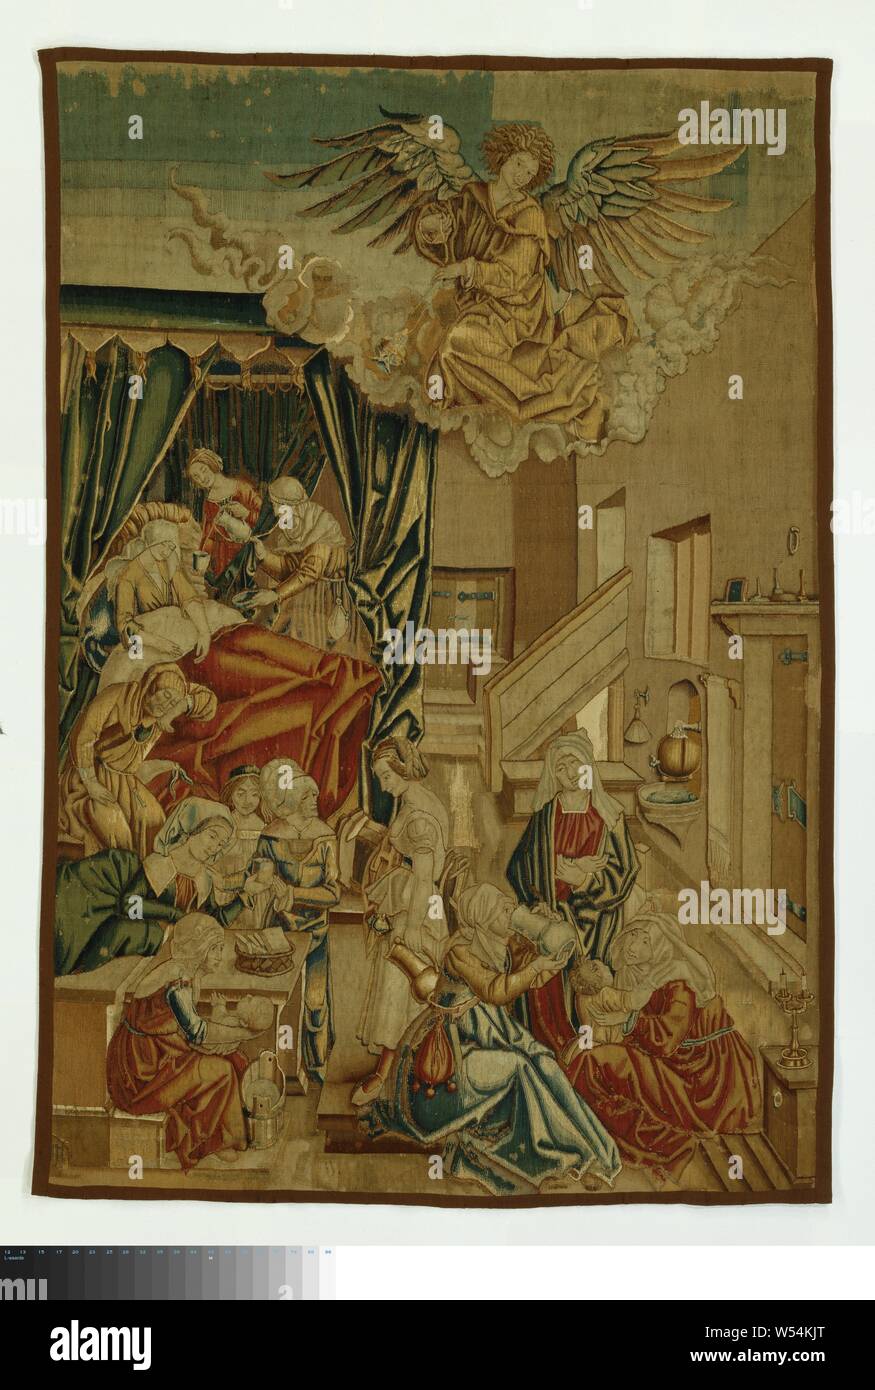 La naissance de la Vierge Marie La vie de la Vierge Marie (titre de la série), la tapisserie avec la naissance de Marie d'Albrecht Dürer. Dans son intérieur il y a un lit à baldaquin sur la gauche, dans laquelle se trouve Anna contre ses oreillers. Derrière le lit, ses deux femmes se courber, l'un avec un bol d'alcool, l'autre avec une tasse et un pichet. L'endormi Joachim est assis sur le sol à l'avant du lit. Dans l'avant-plan est une femme en rouge avec une baignoire d'eau devant elle, tenant l'enfant, derrière elle une table avec un panier à pain, autour de laquelle trois femmes sont réunies, l'un d'eux parle d'un esclave, elle tourne le dos Banque D'Images